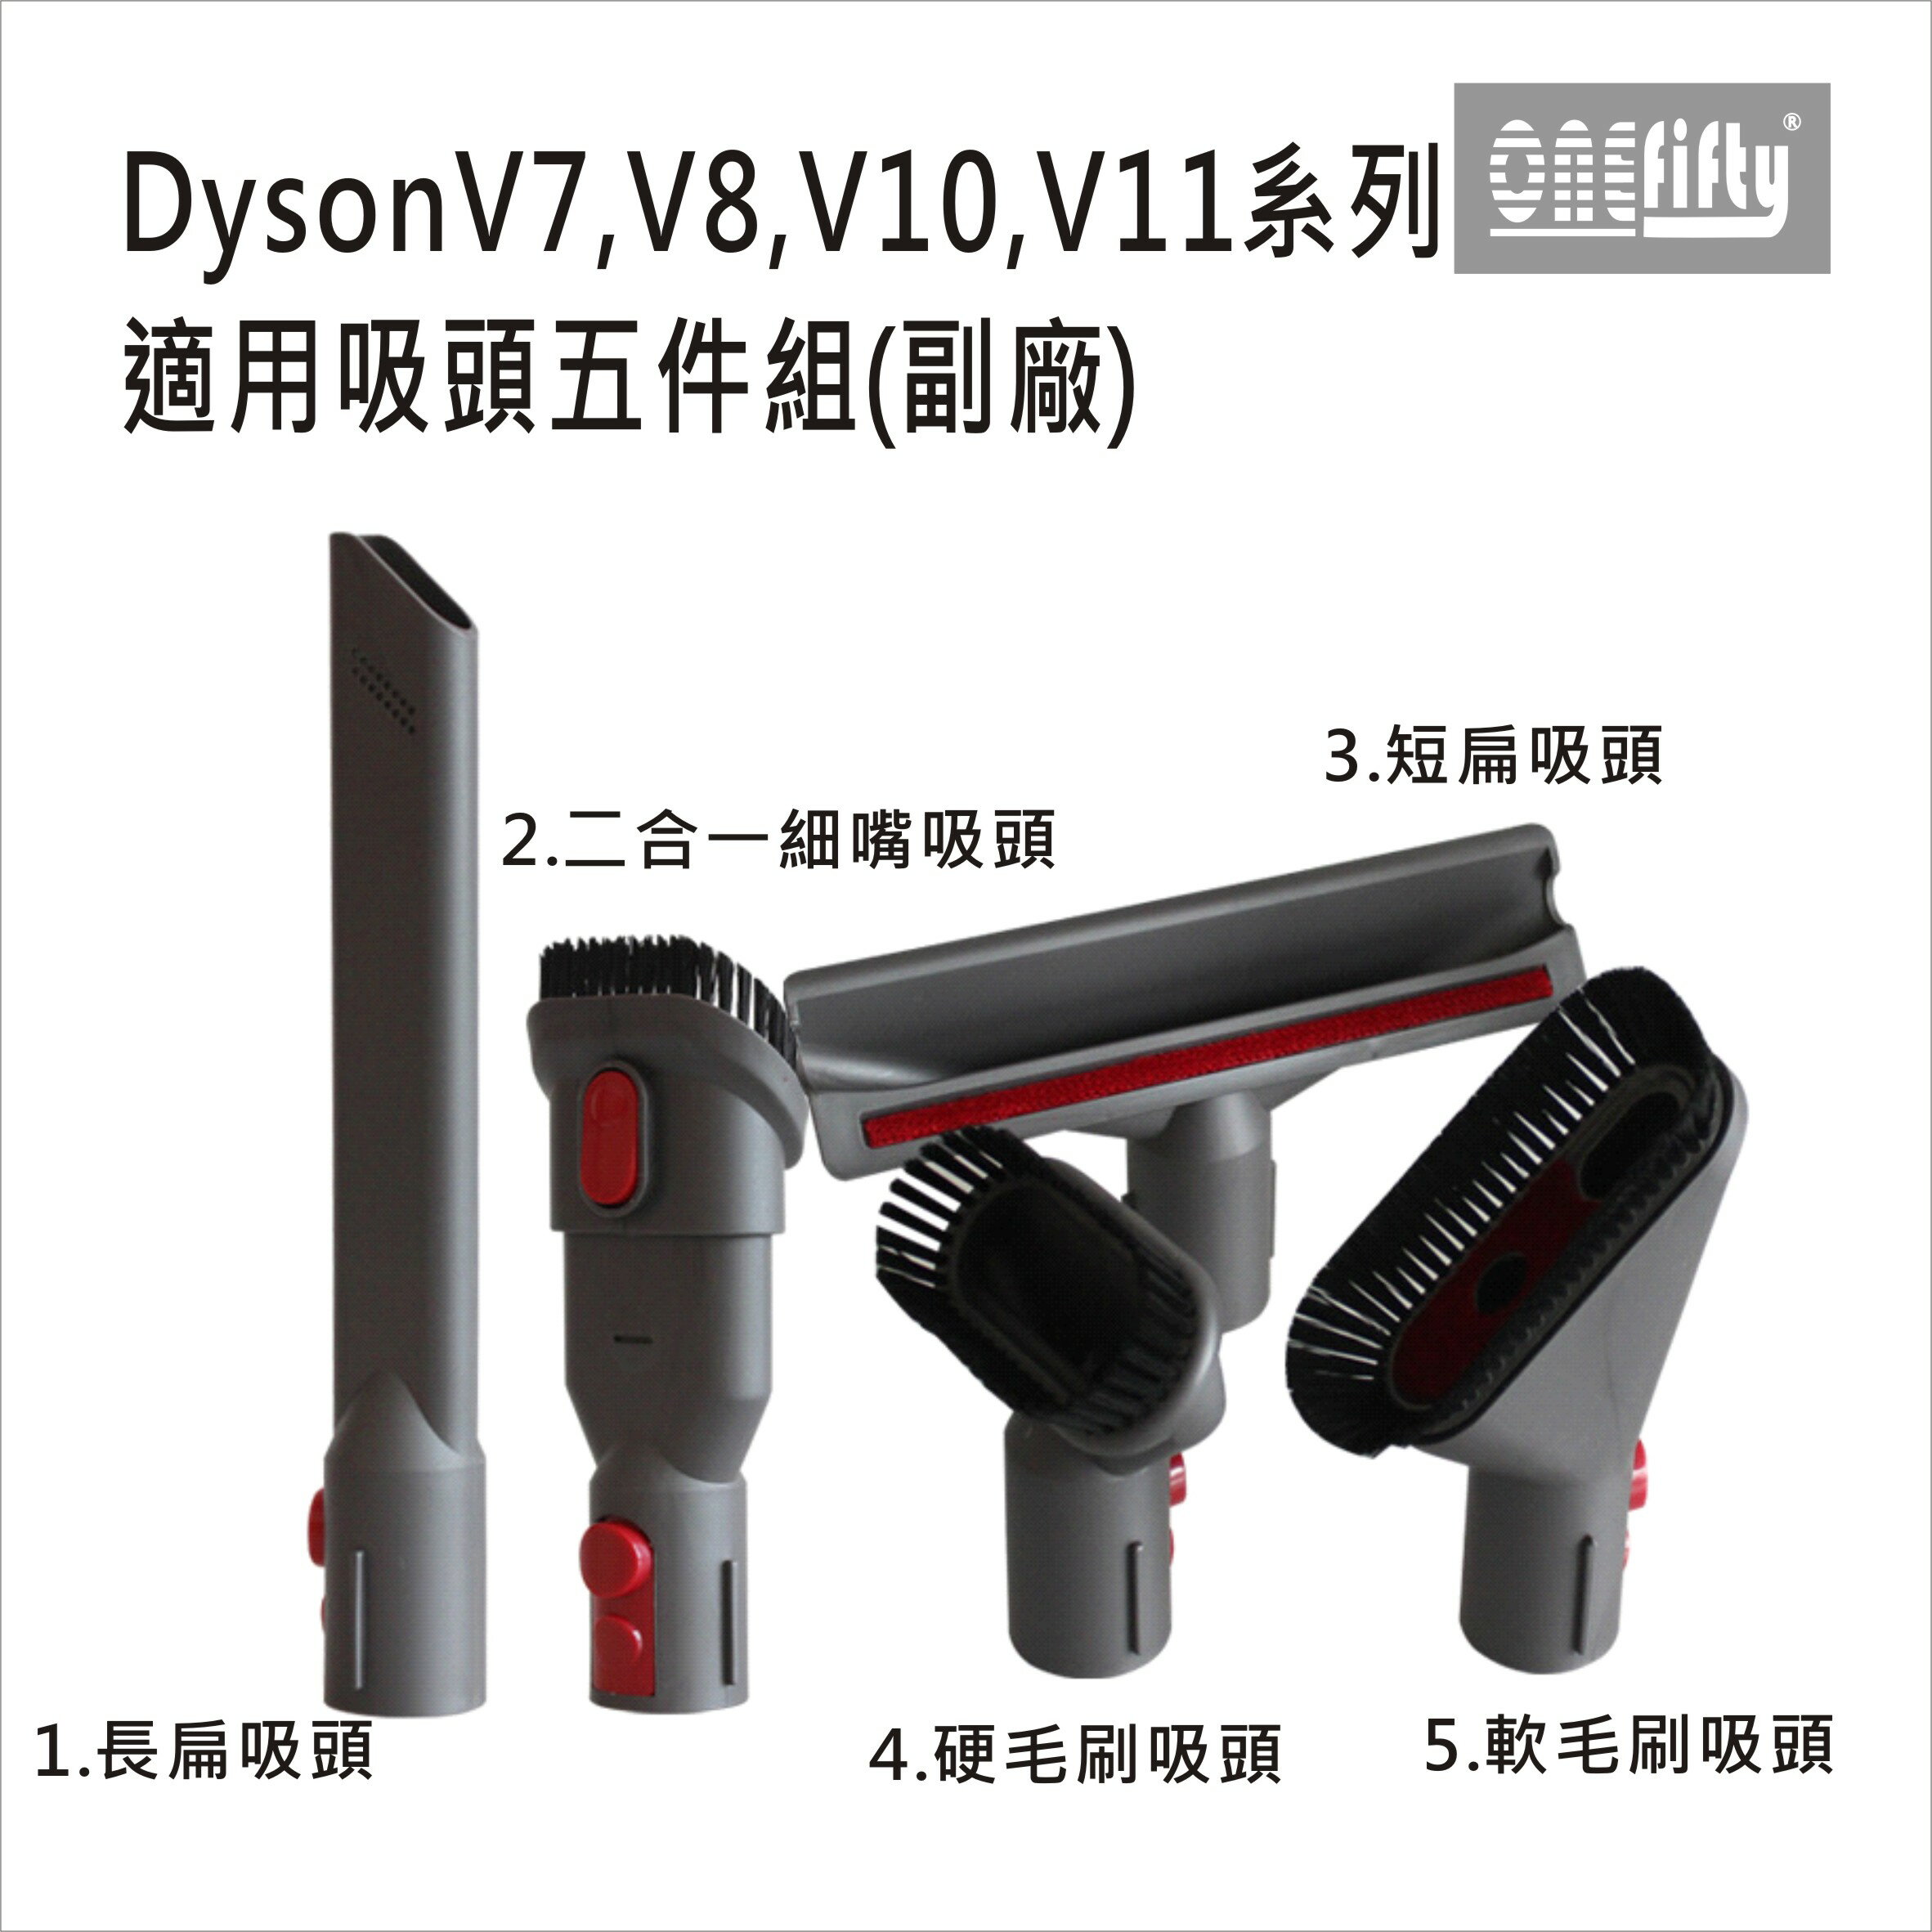 吸塵器配件 DYSON V7,V8,V10,V11系列適用吸頭5件組(副廠) 台灣現貨【居家達人 DS022】